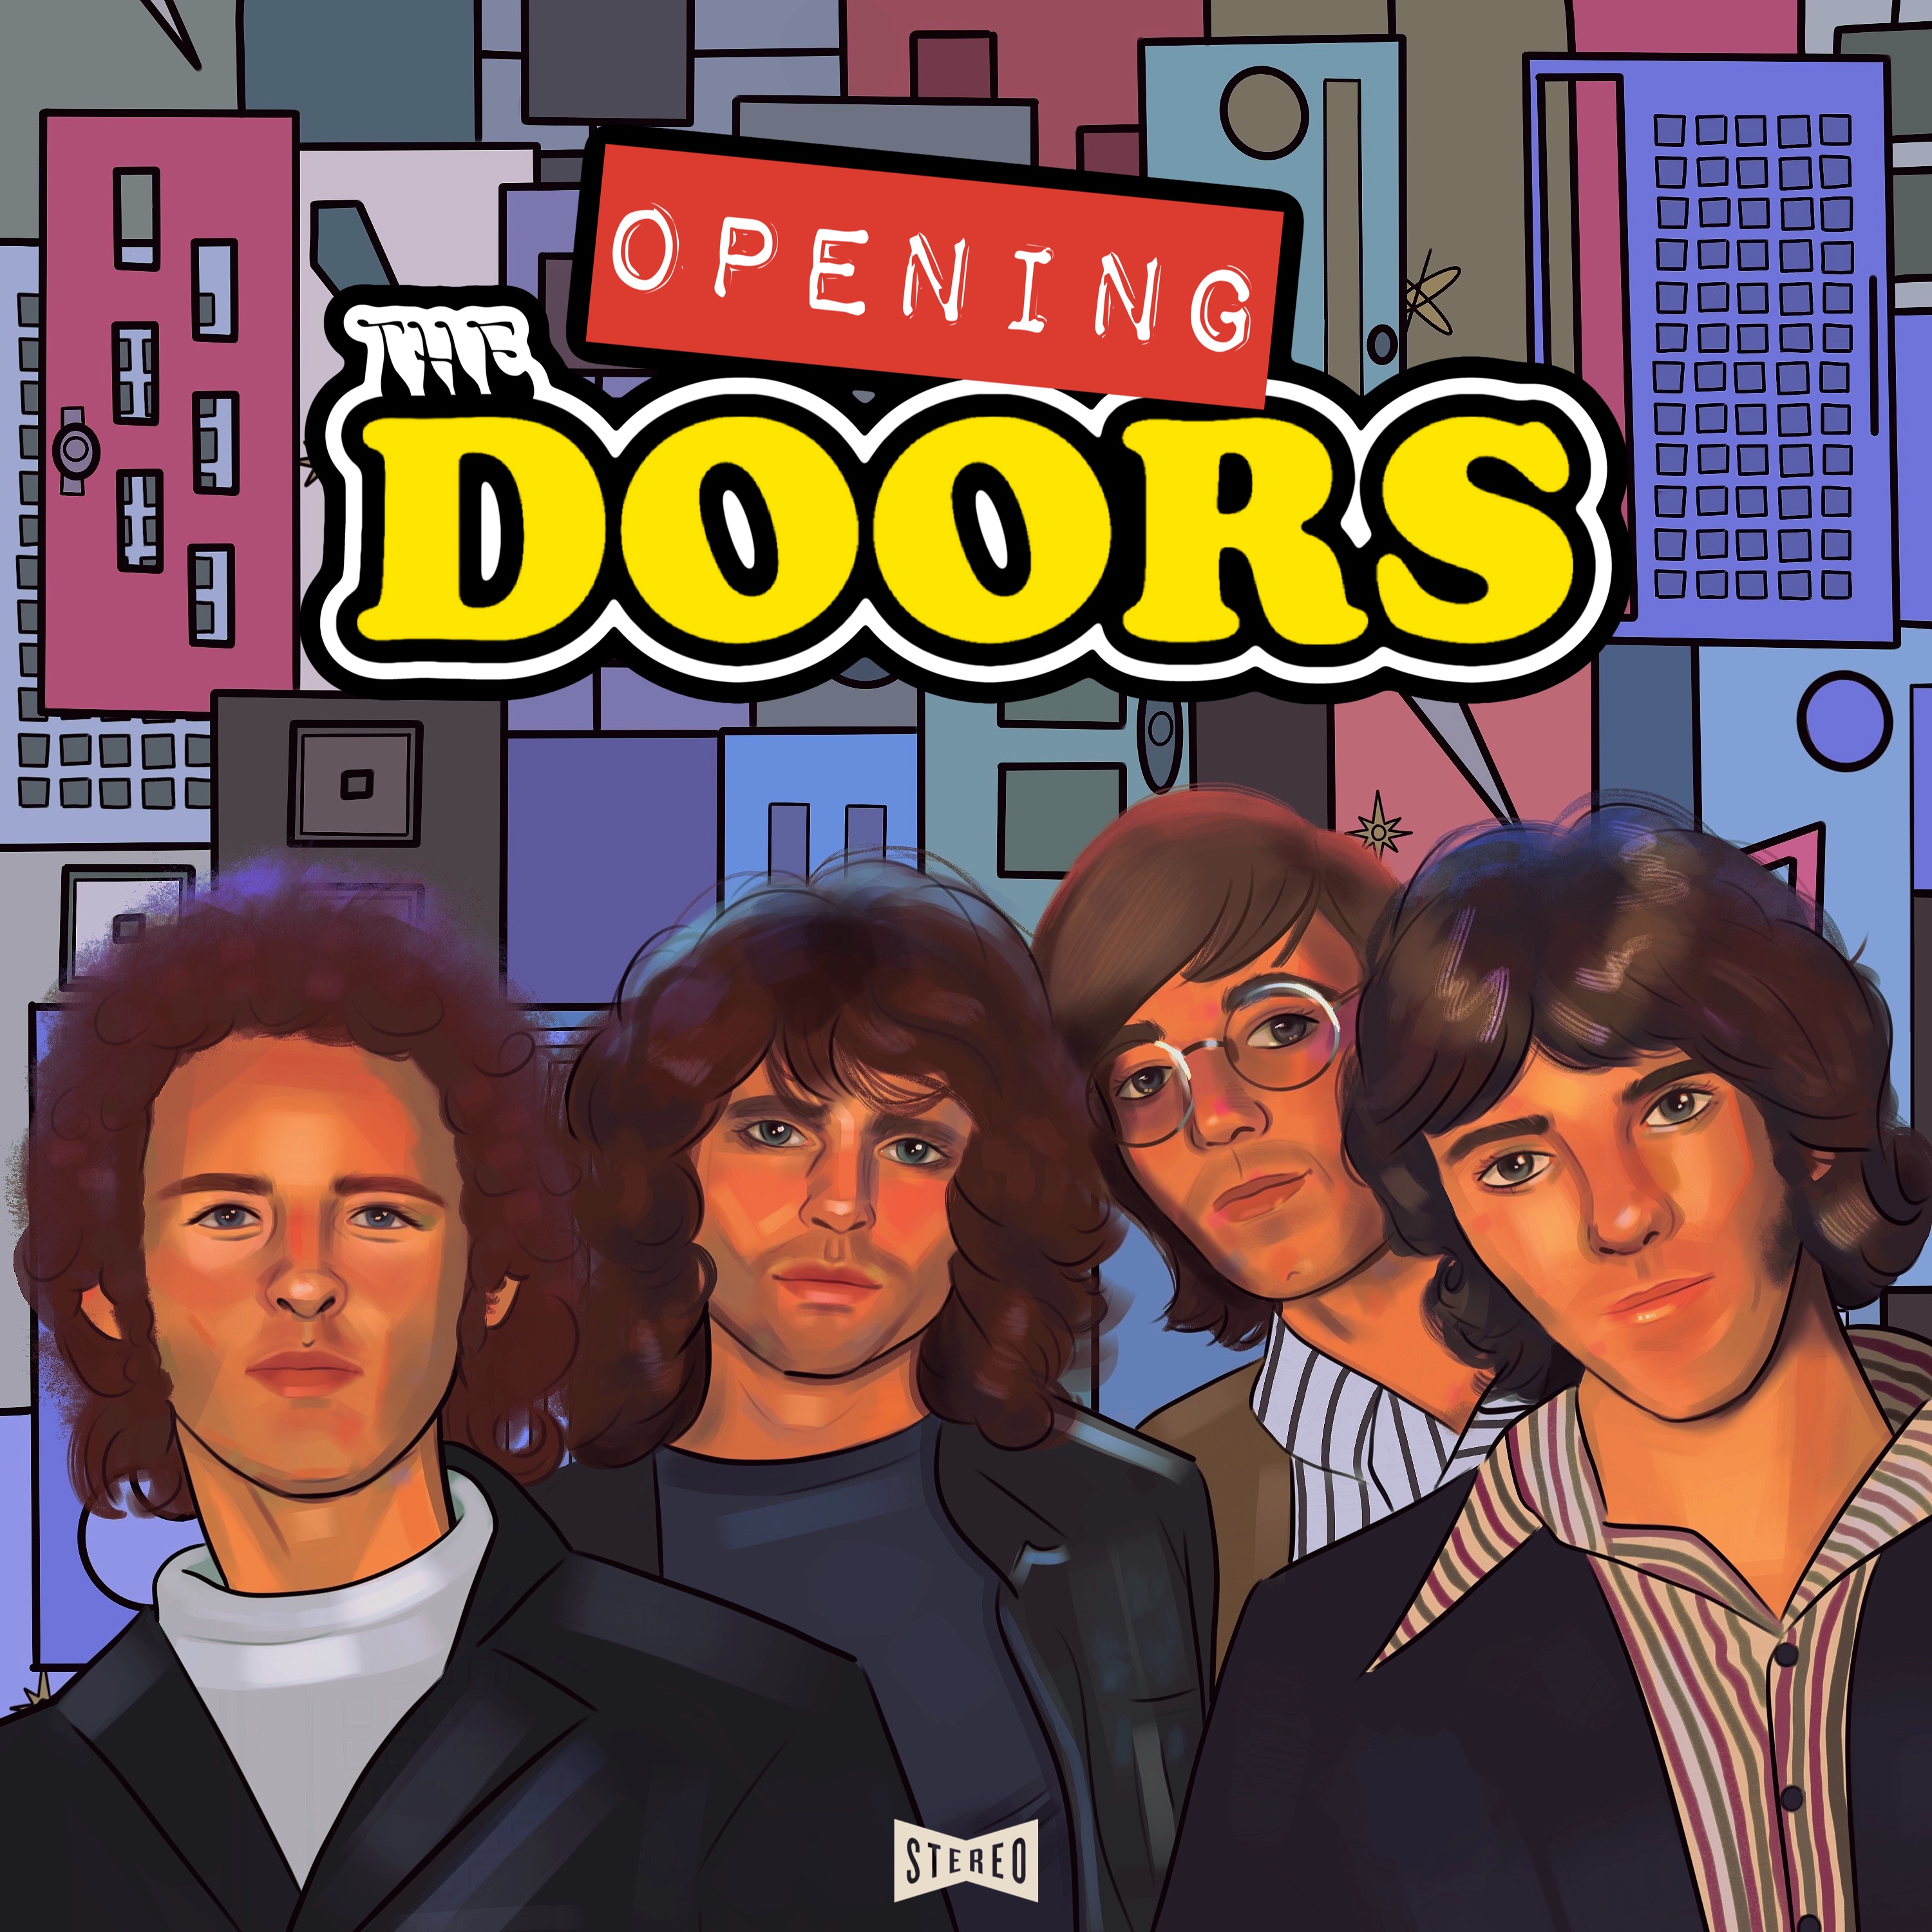 doors players when they open doors [idk i never played doors /j